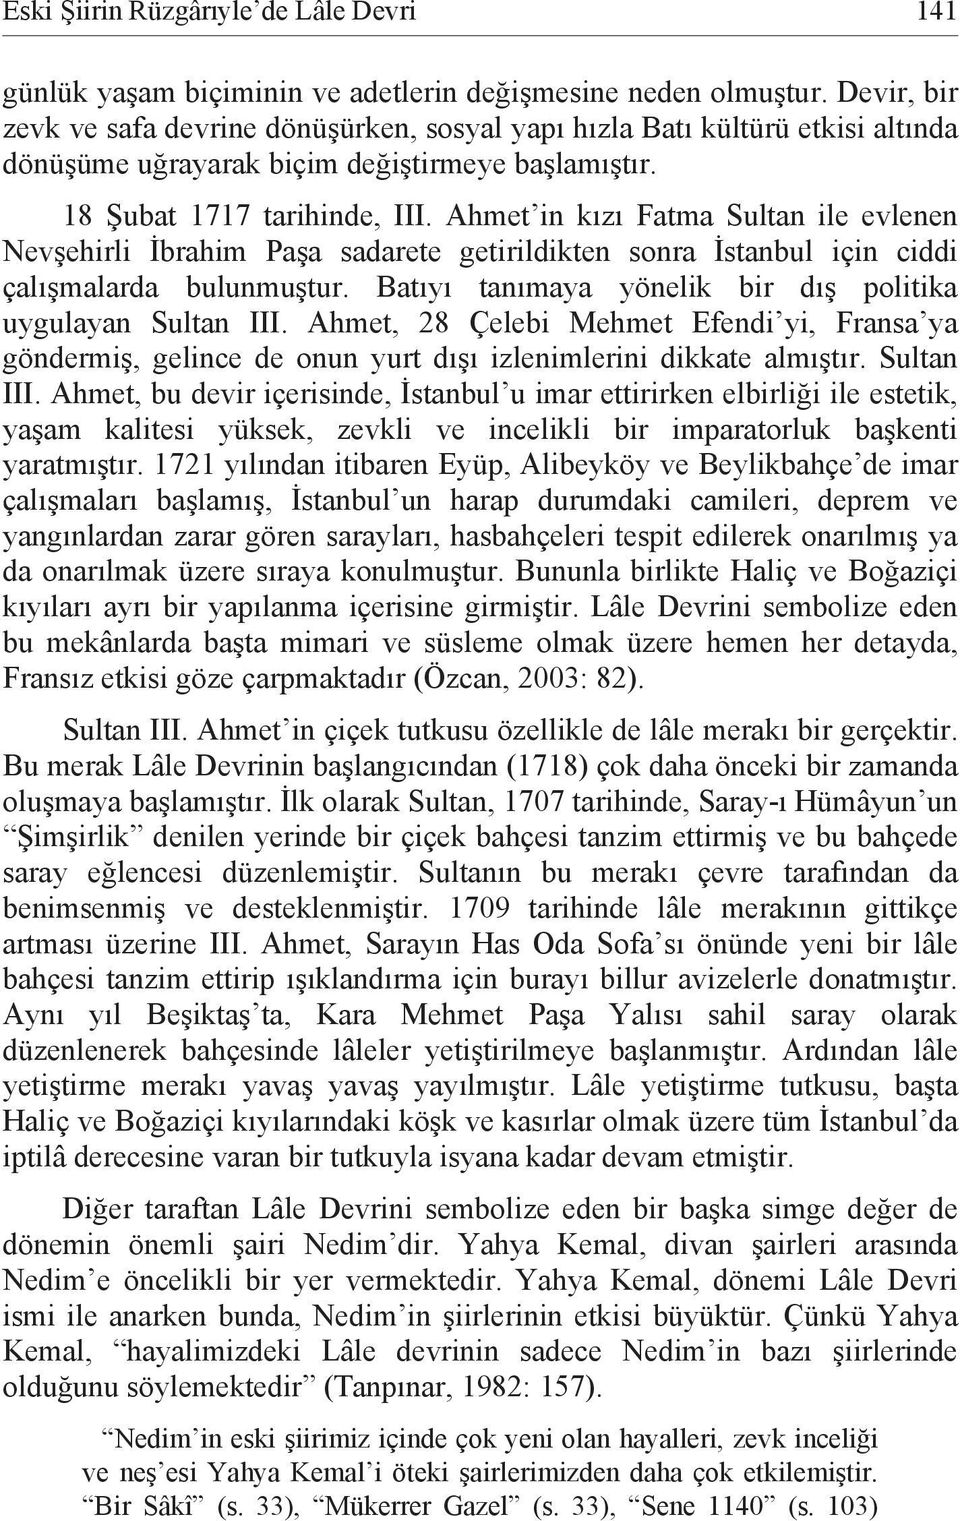 Ahmet in kızı Fatma Sultan ile evlenen Nevşehirli İbrahim Paşa sadarete getirildikten sonra İstanbul için ciddi çalışmalarda bulunmuştur. Batıyı tanımaya yönelik bir dış politika uygulayan Sultan III.